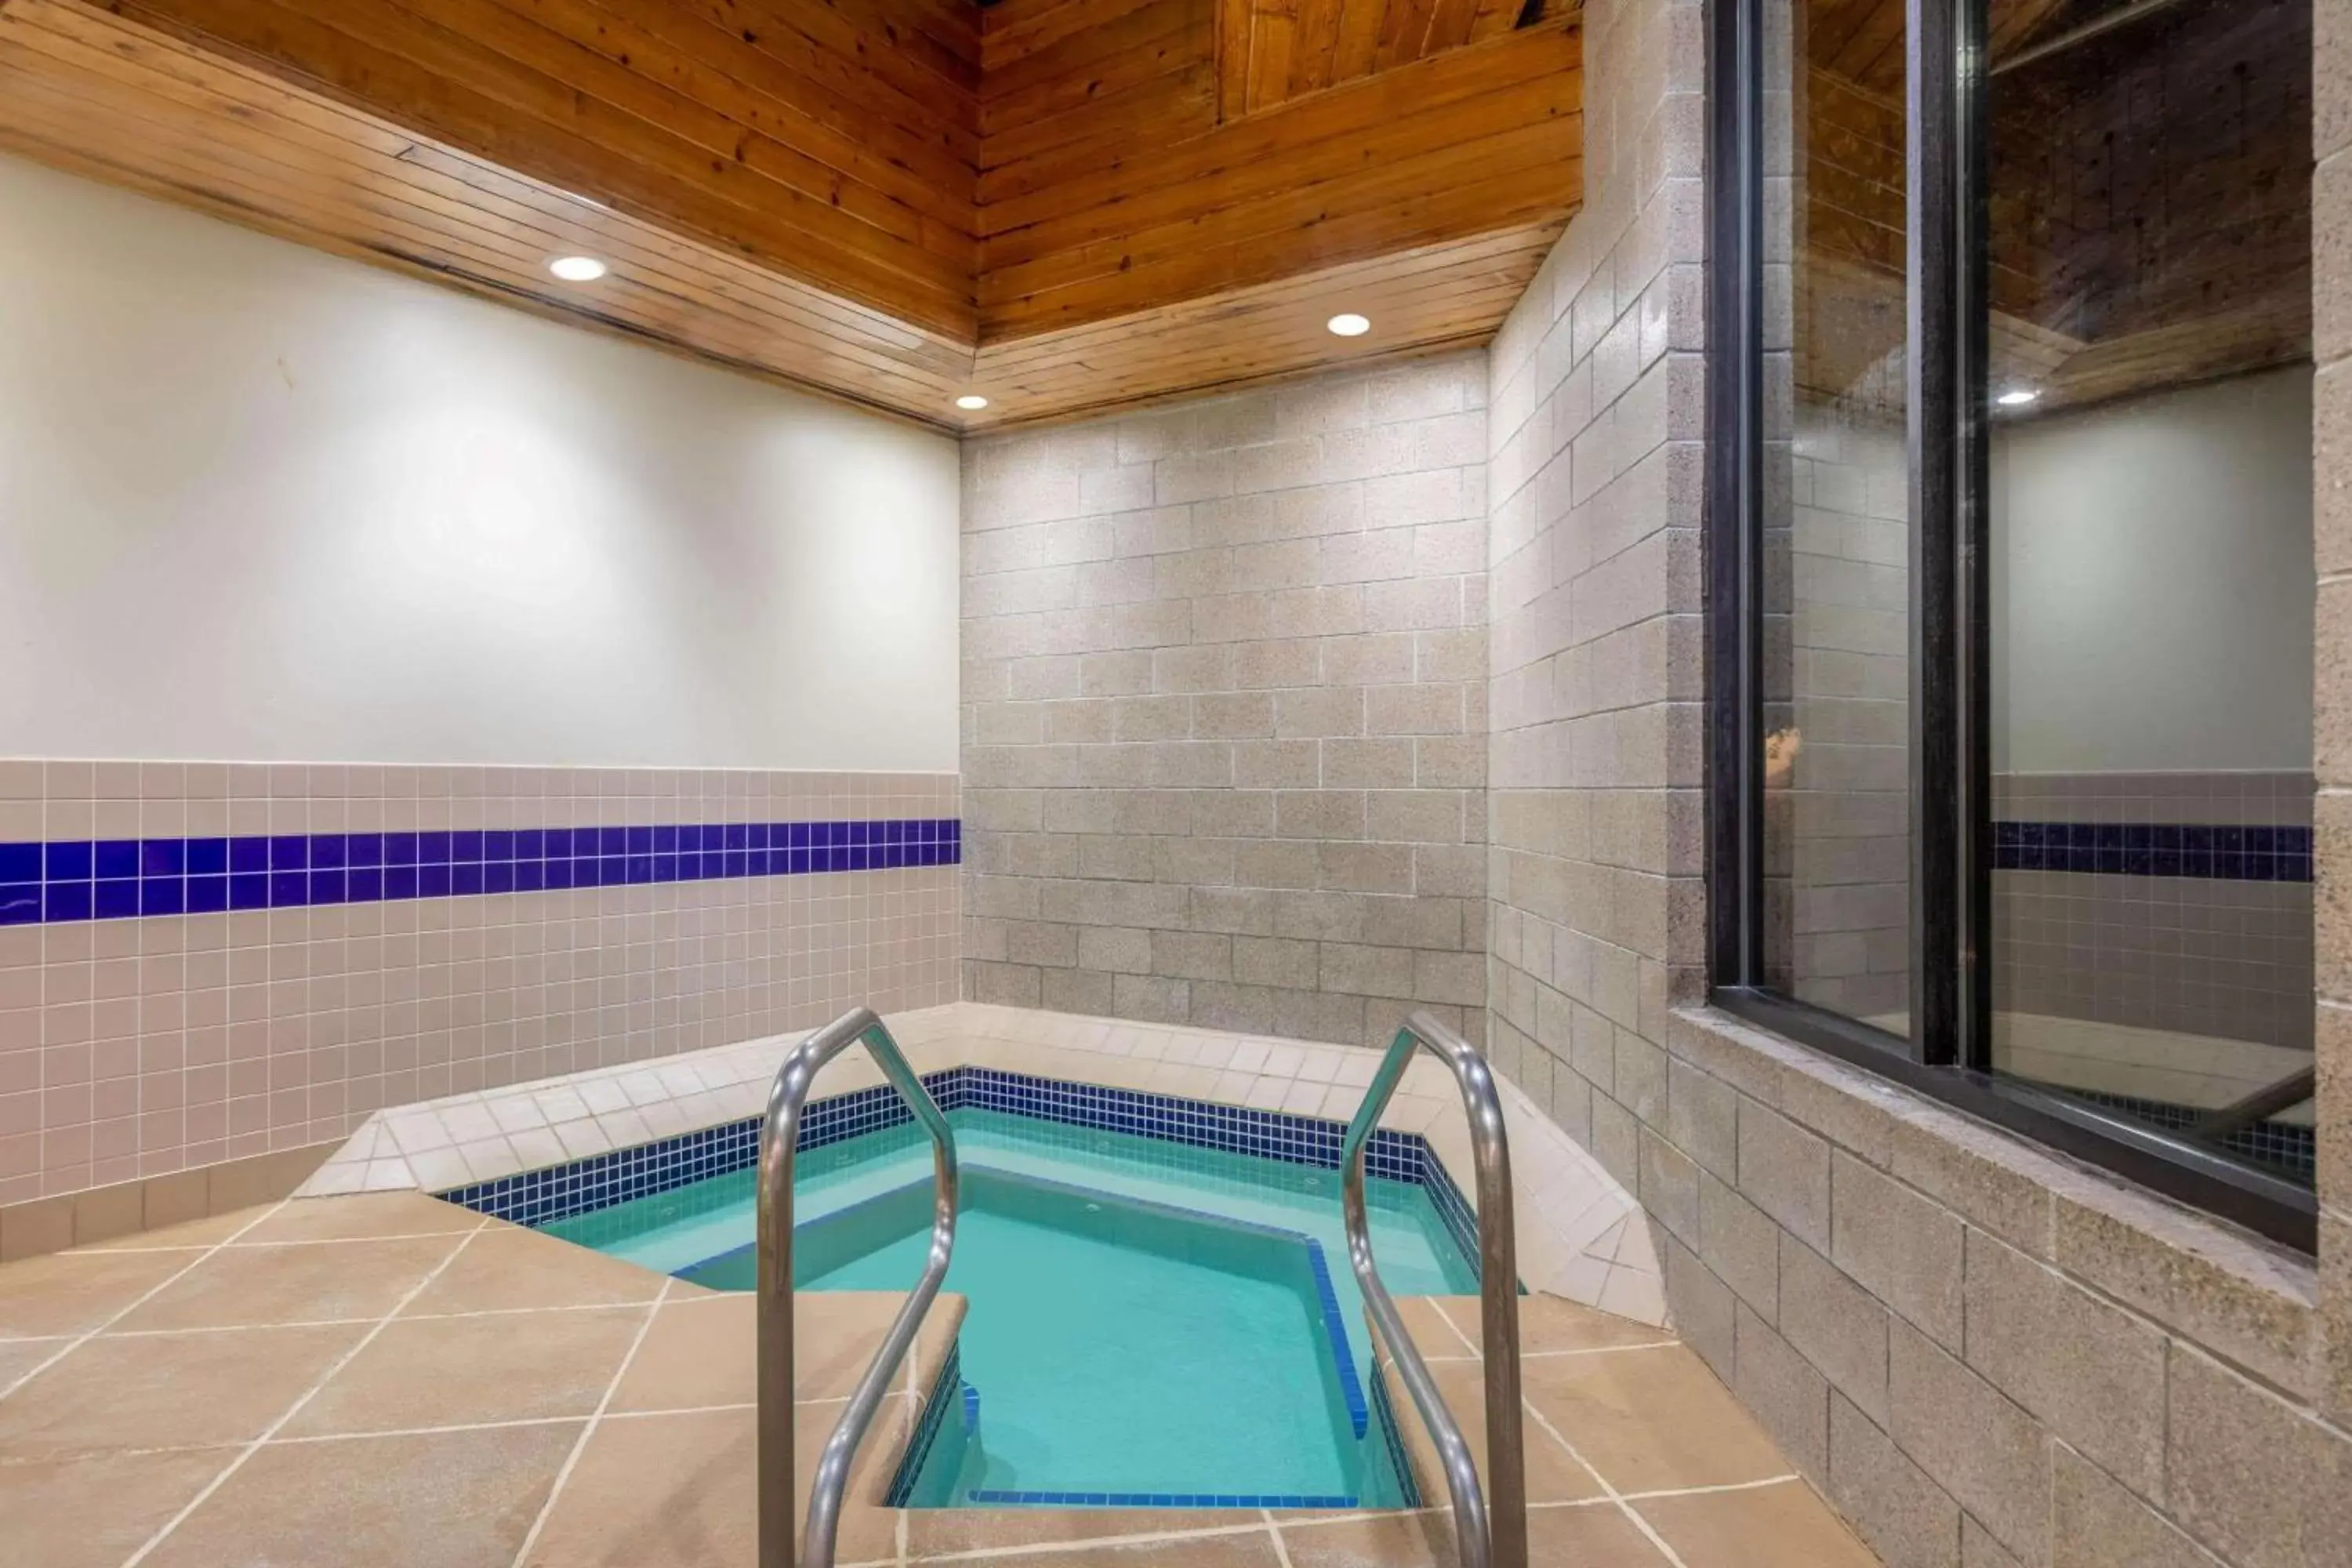 Hot Tub, Swimming Pool in Days Inn by Wyndham Eagan Minnesota Near Mall of America